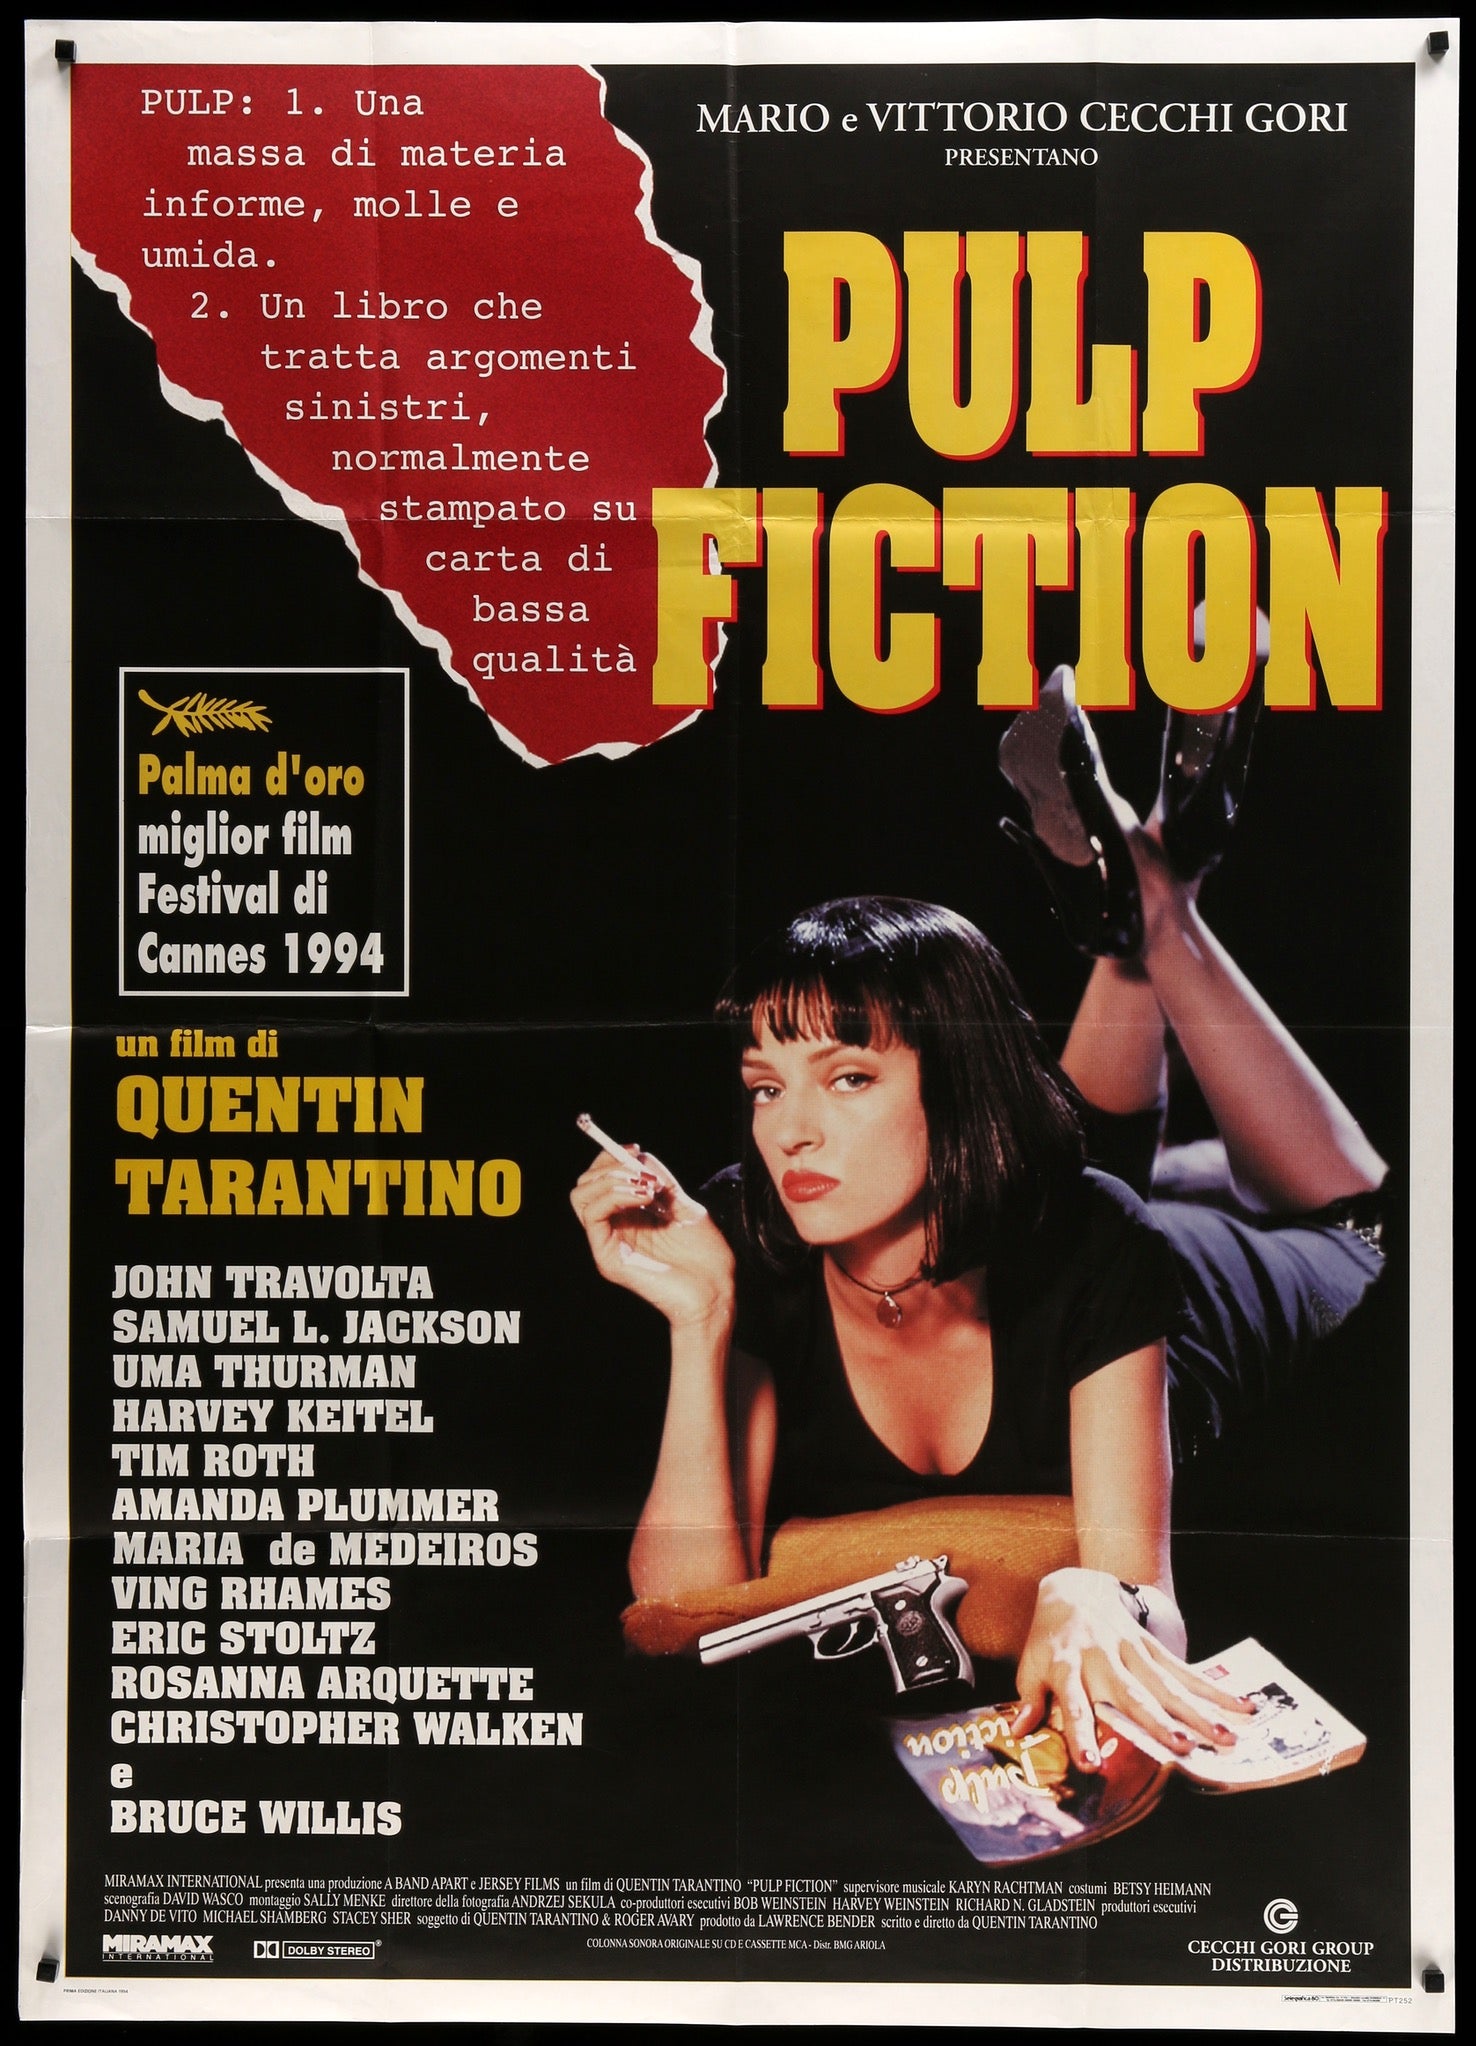 PULP FICTION, Original Czech Poster